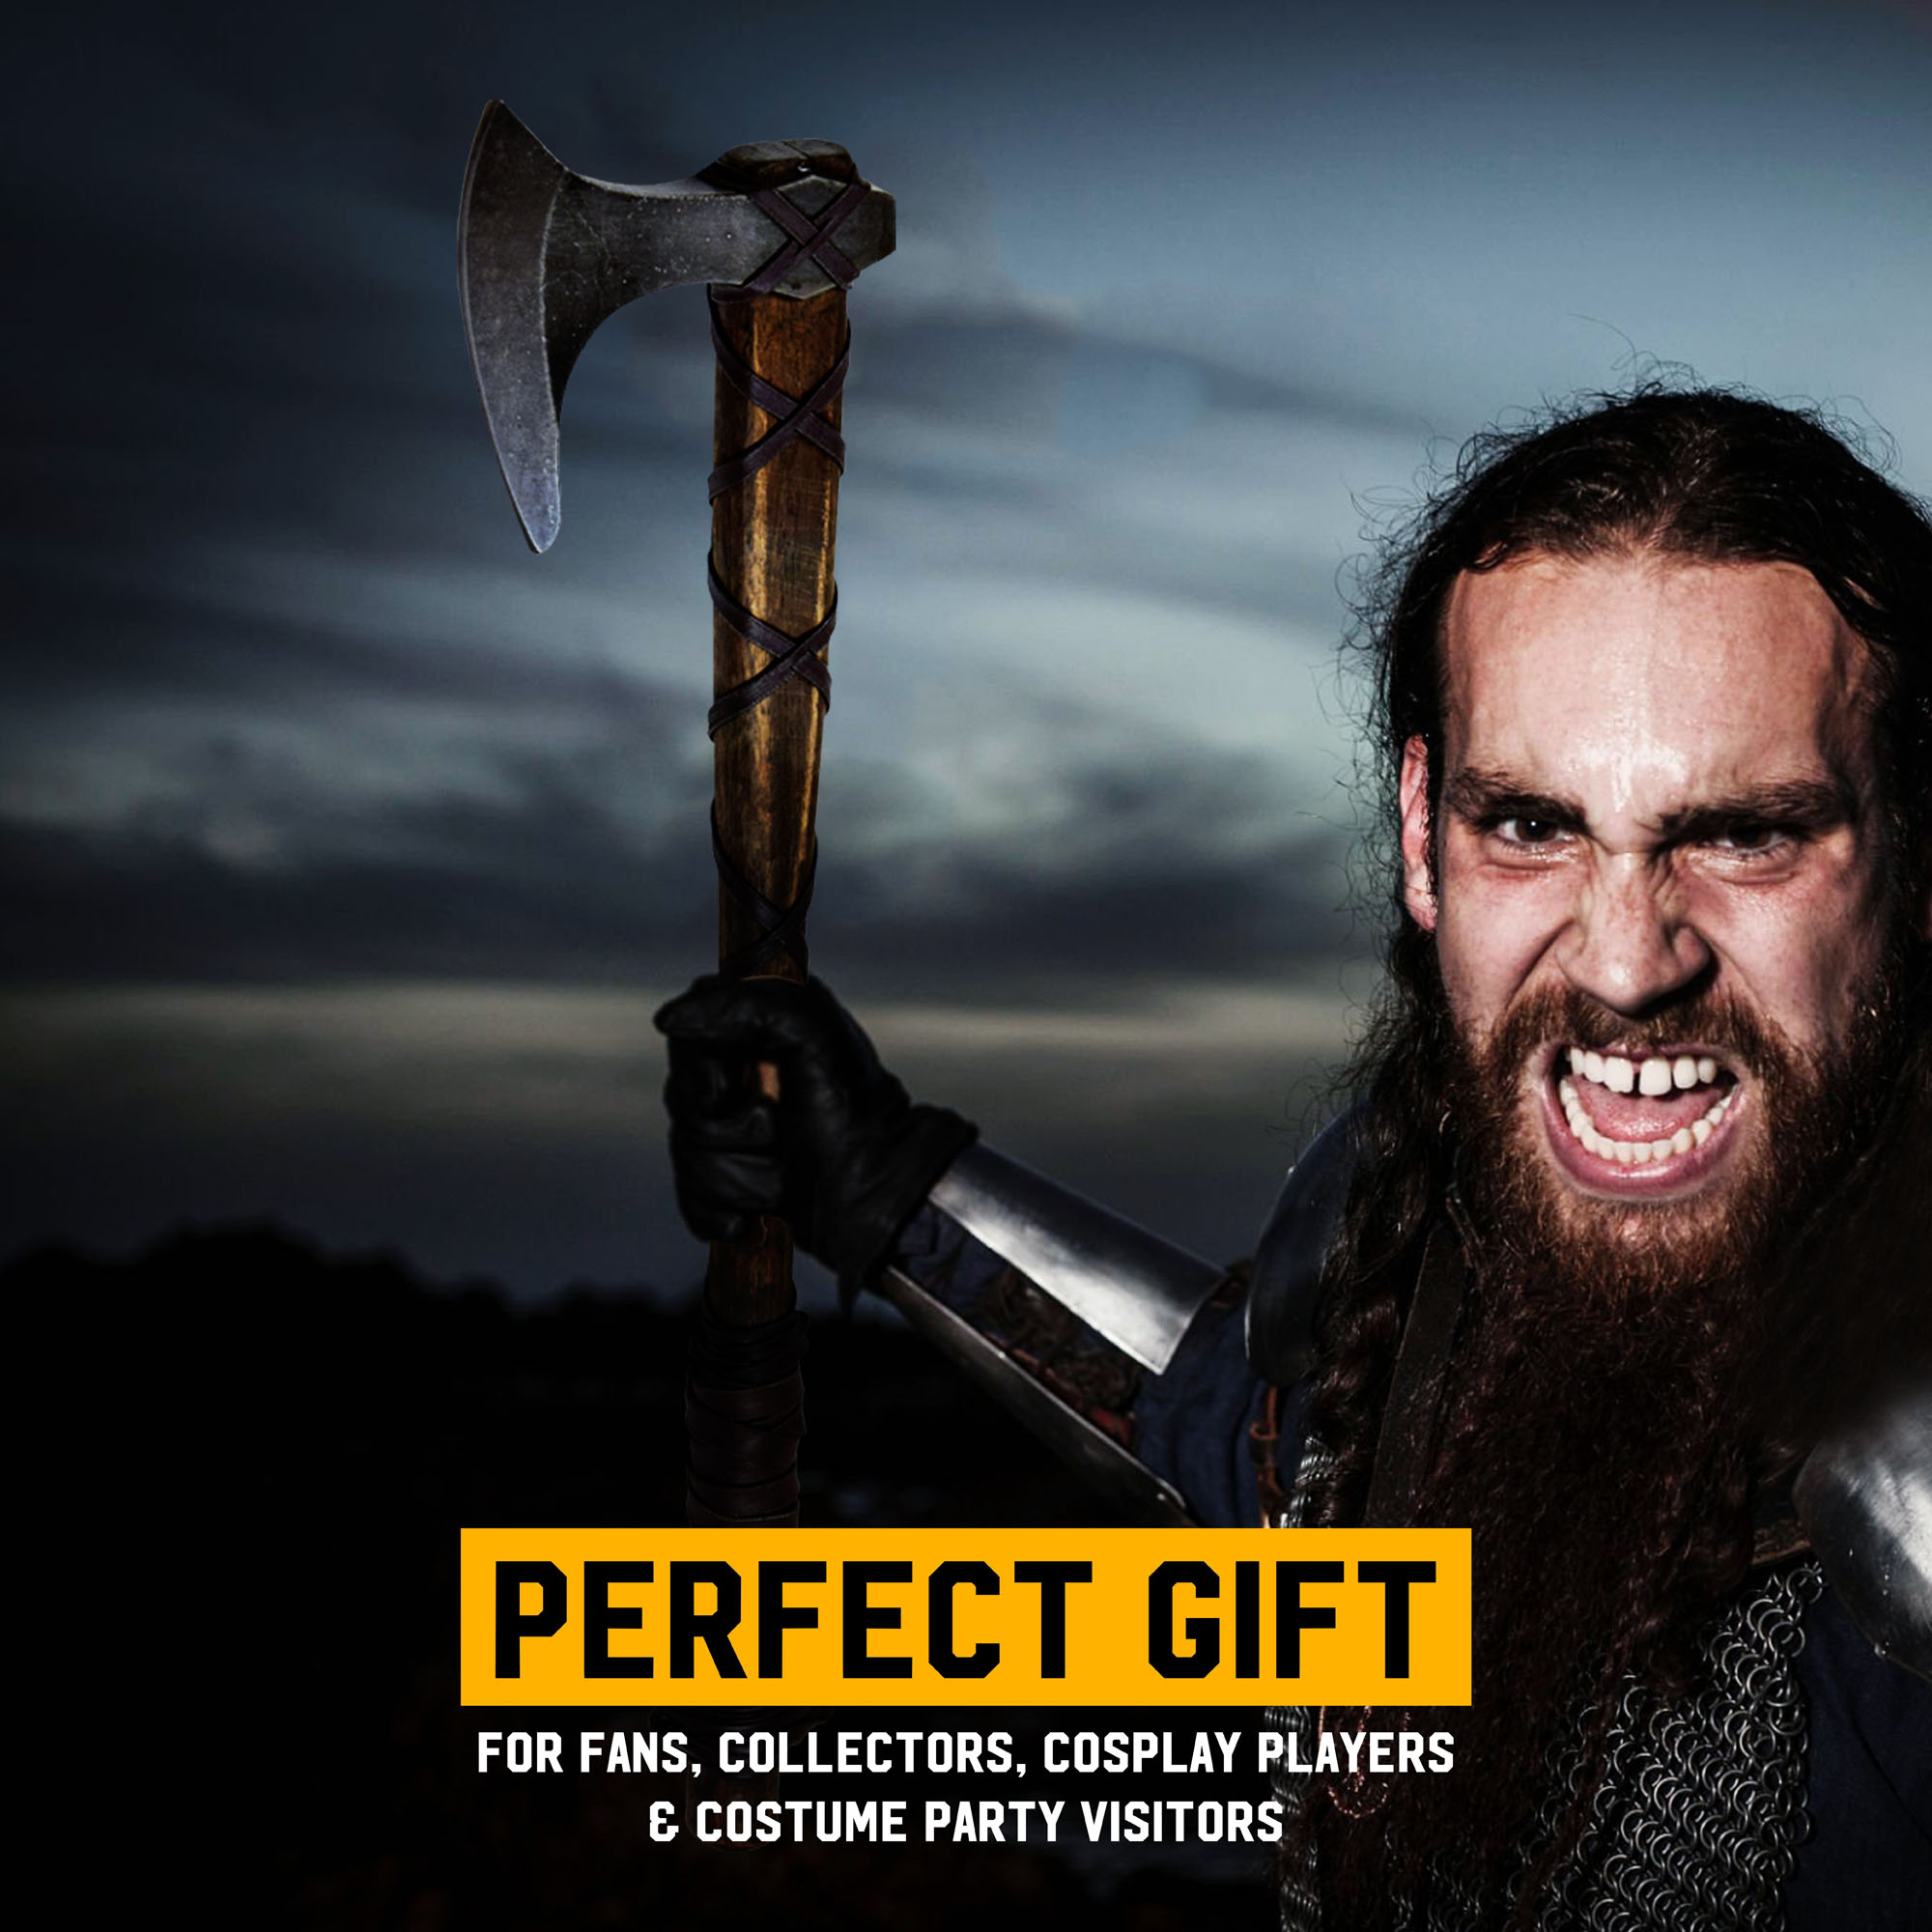 Vikings - Axt von Ragnar Lothbrok - Definitive Edition